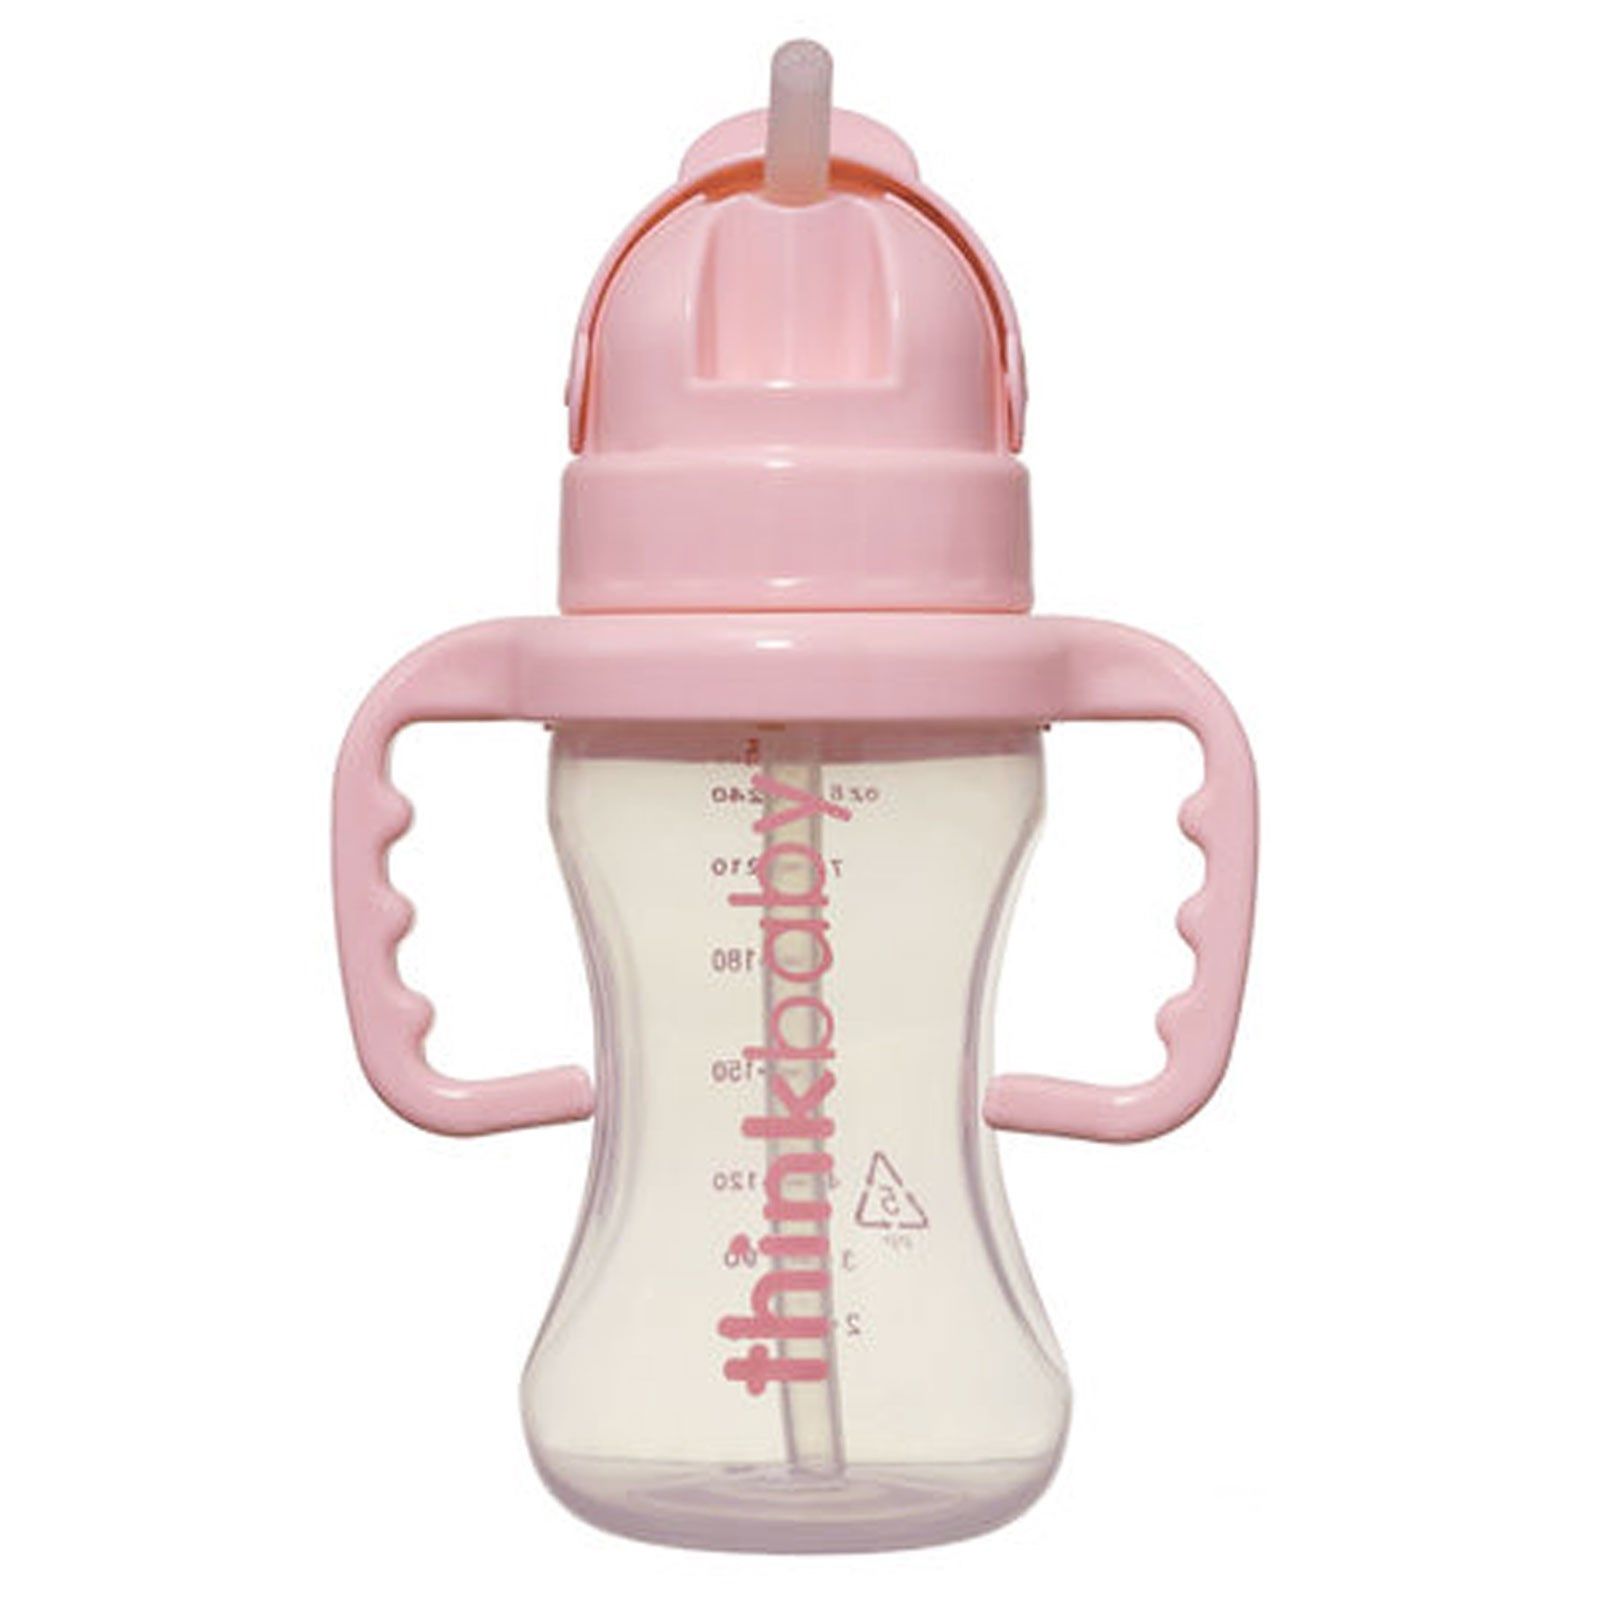 Бутылочка с трубочкой. Поильник с трубочкой Combi Step 4 - Straw Mug. Детская бутылочка с трубочкой. Бутылочка с трубочкой для новорожденных.